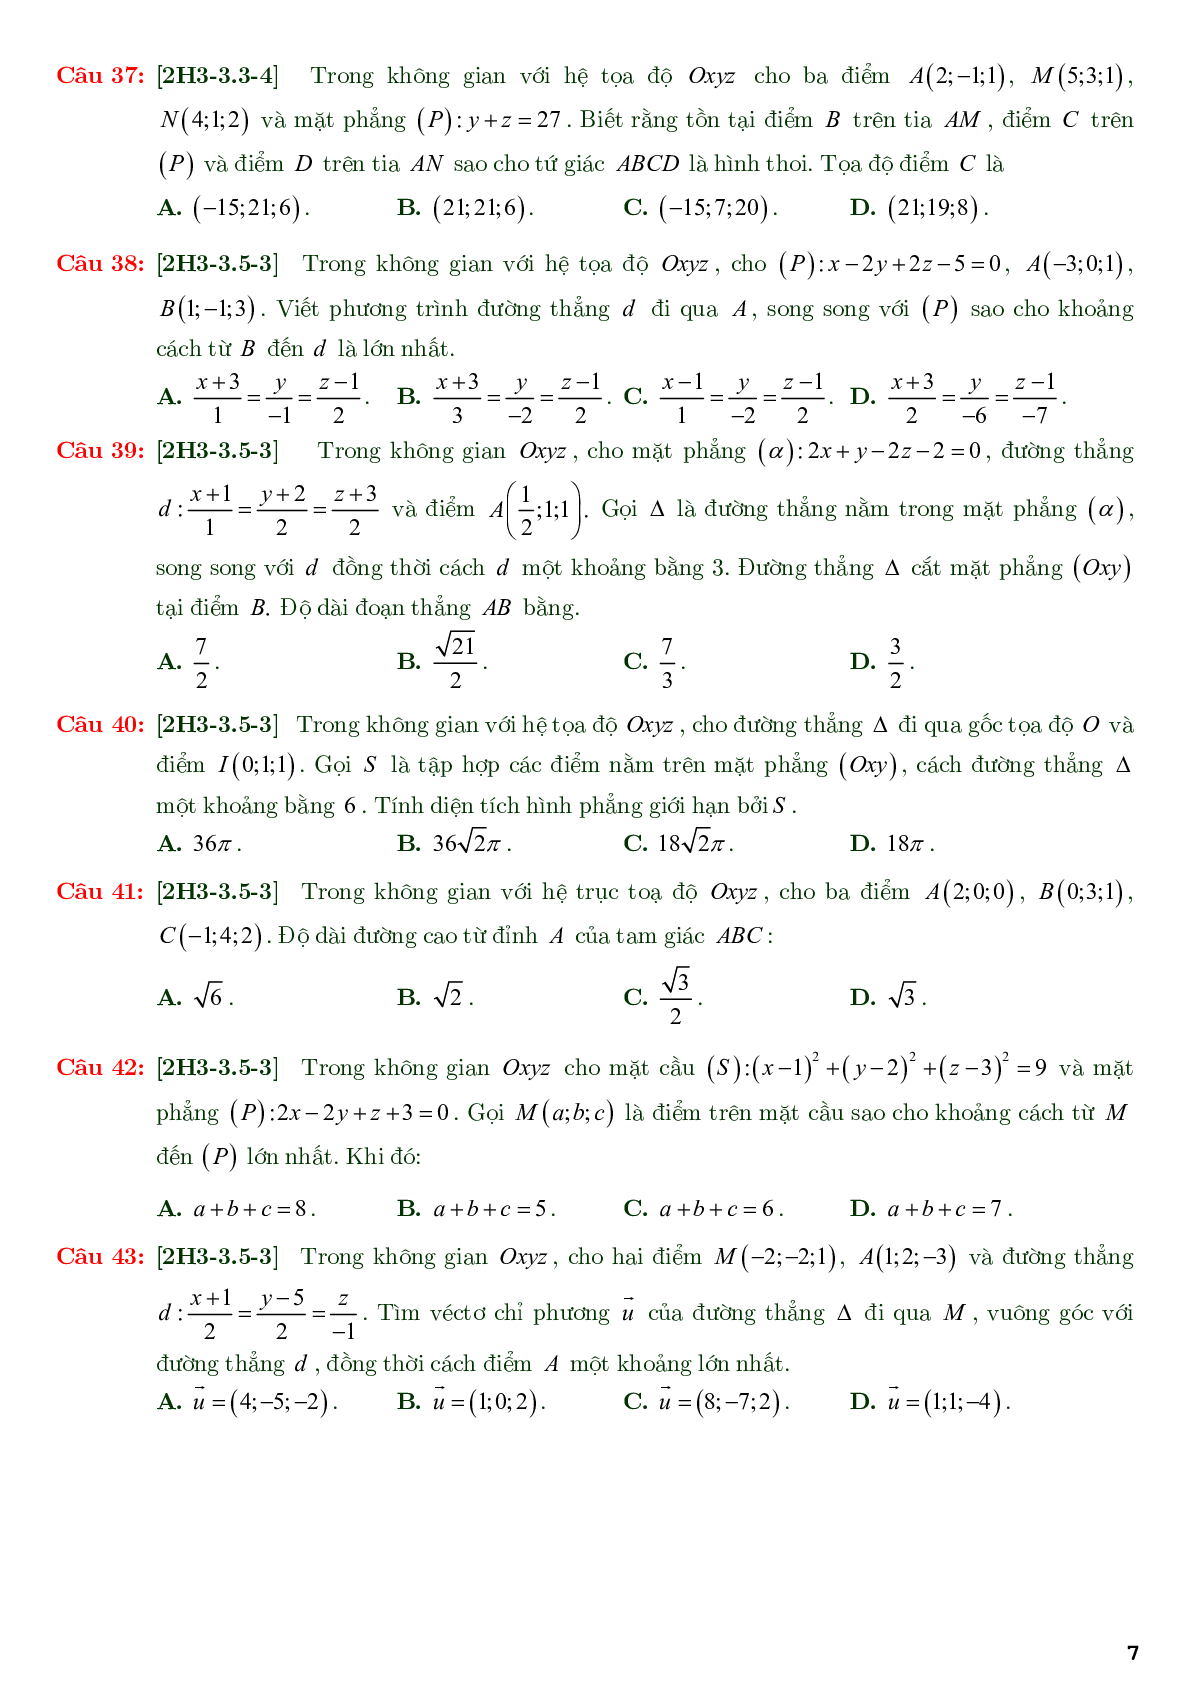 86 câu trắc nghiệm về phương trình đường thẳng nâng cao - có đáp án chi tiết (trang 7)